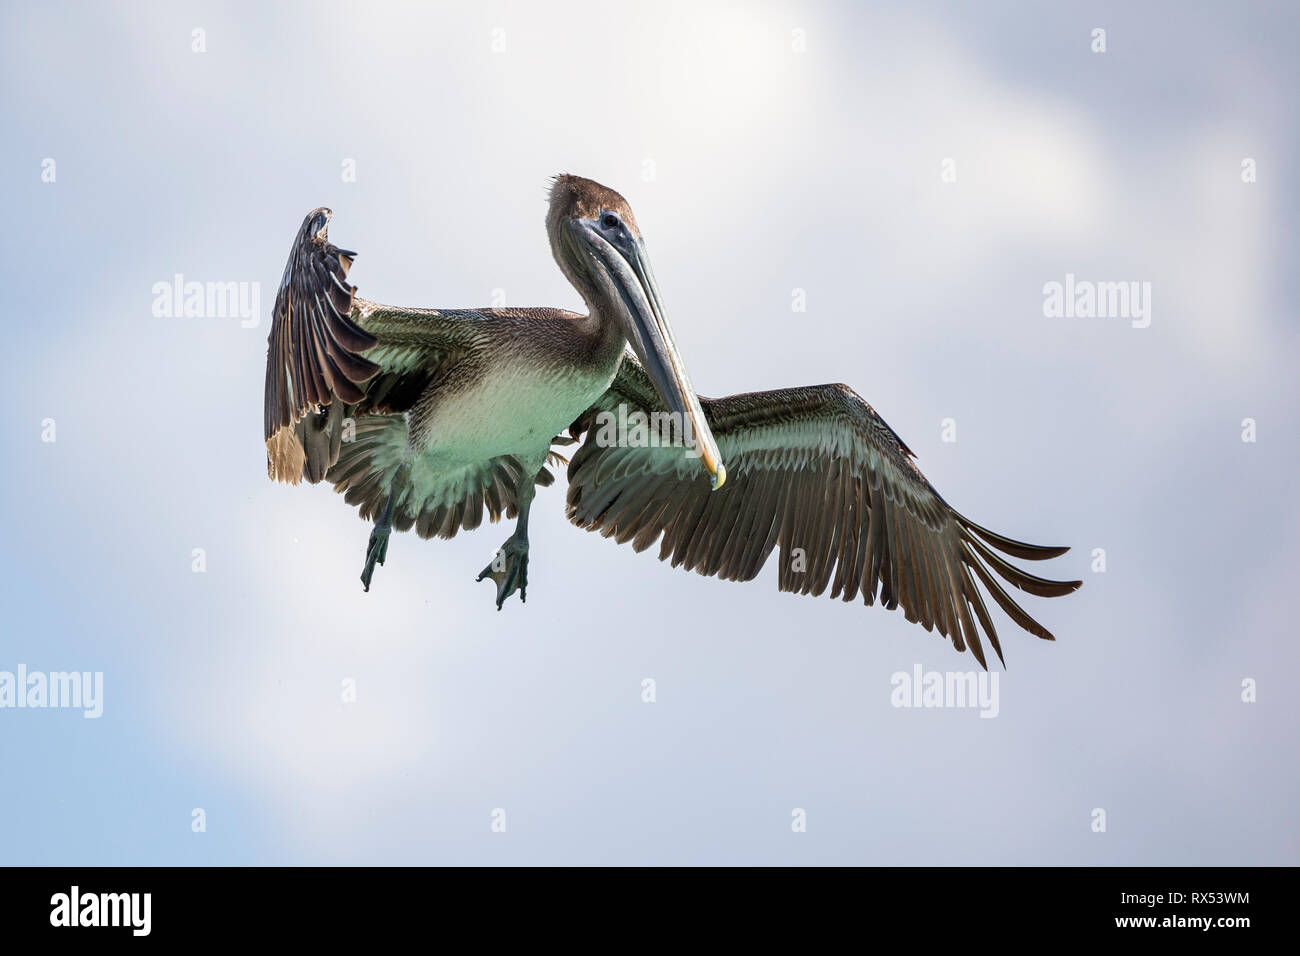 Ein Pelikan fliegt mit sowie sowie sowie Foto Stock